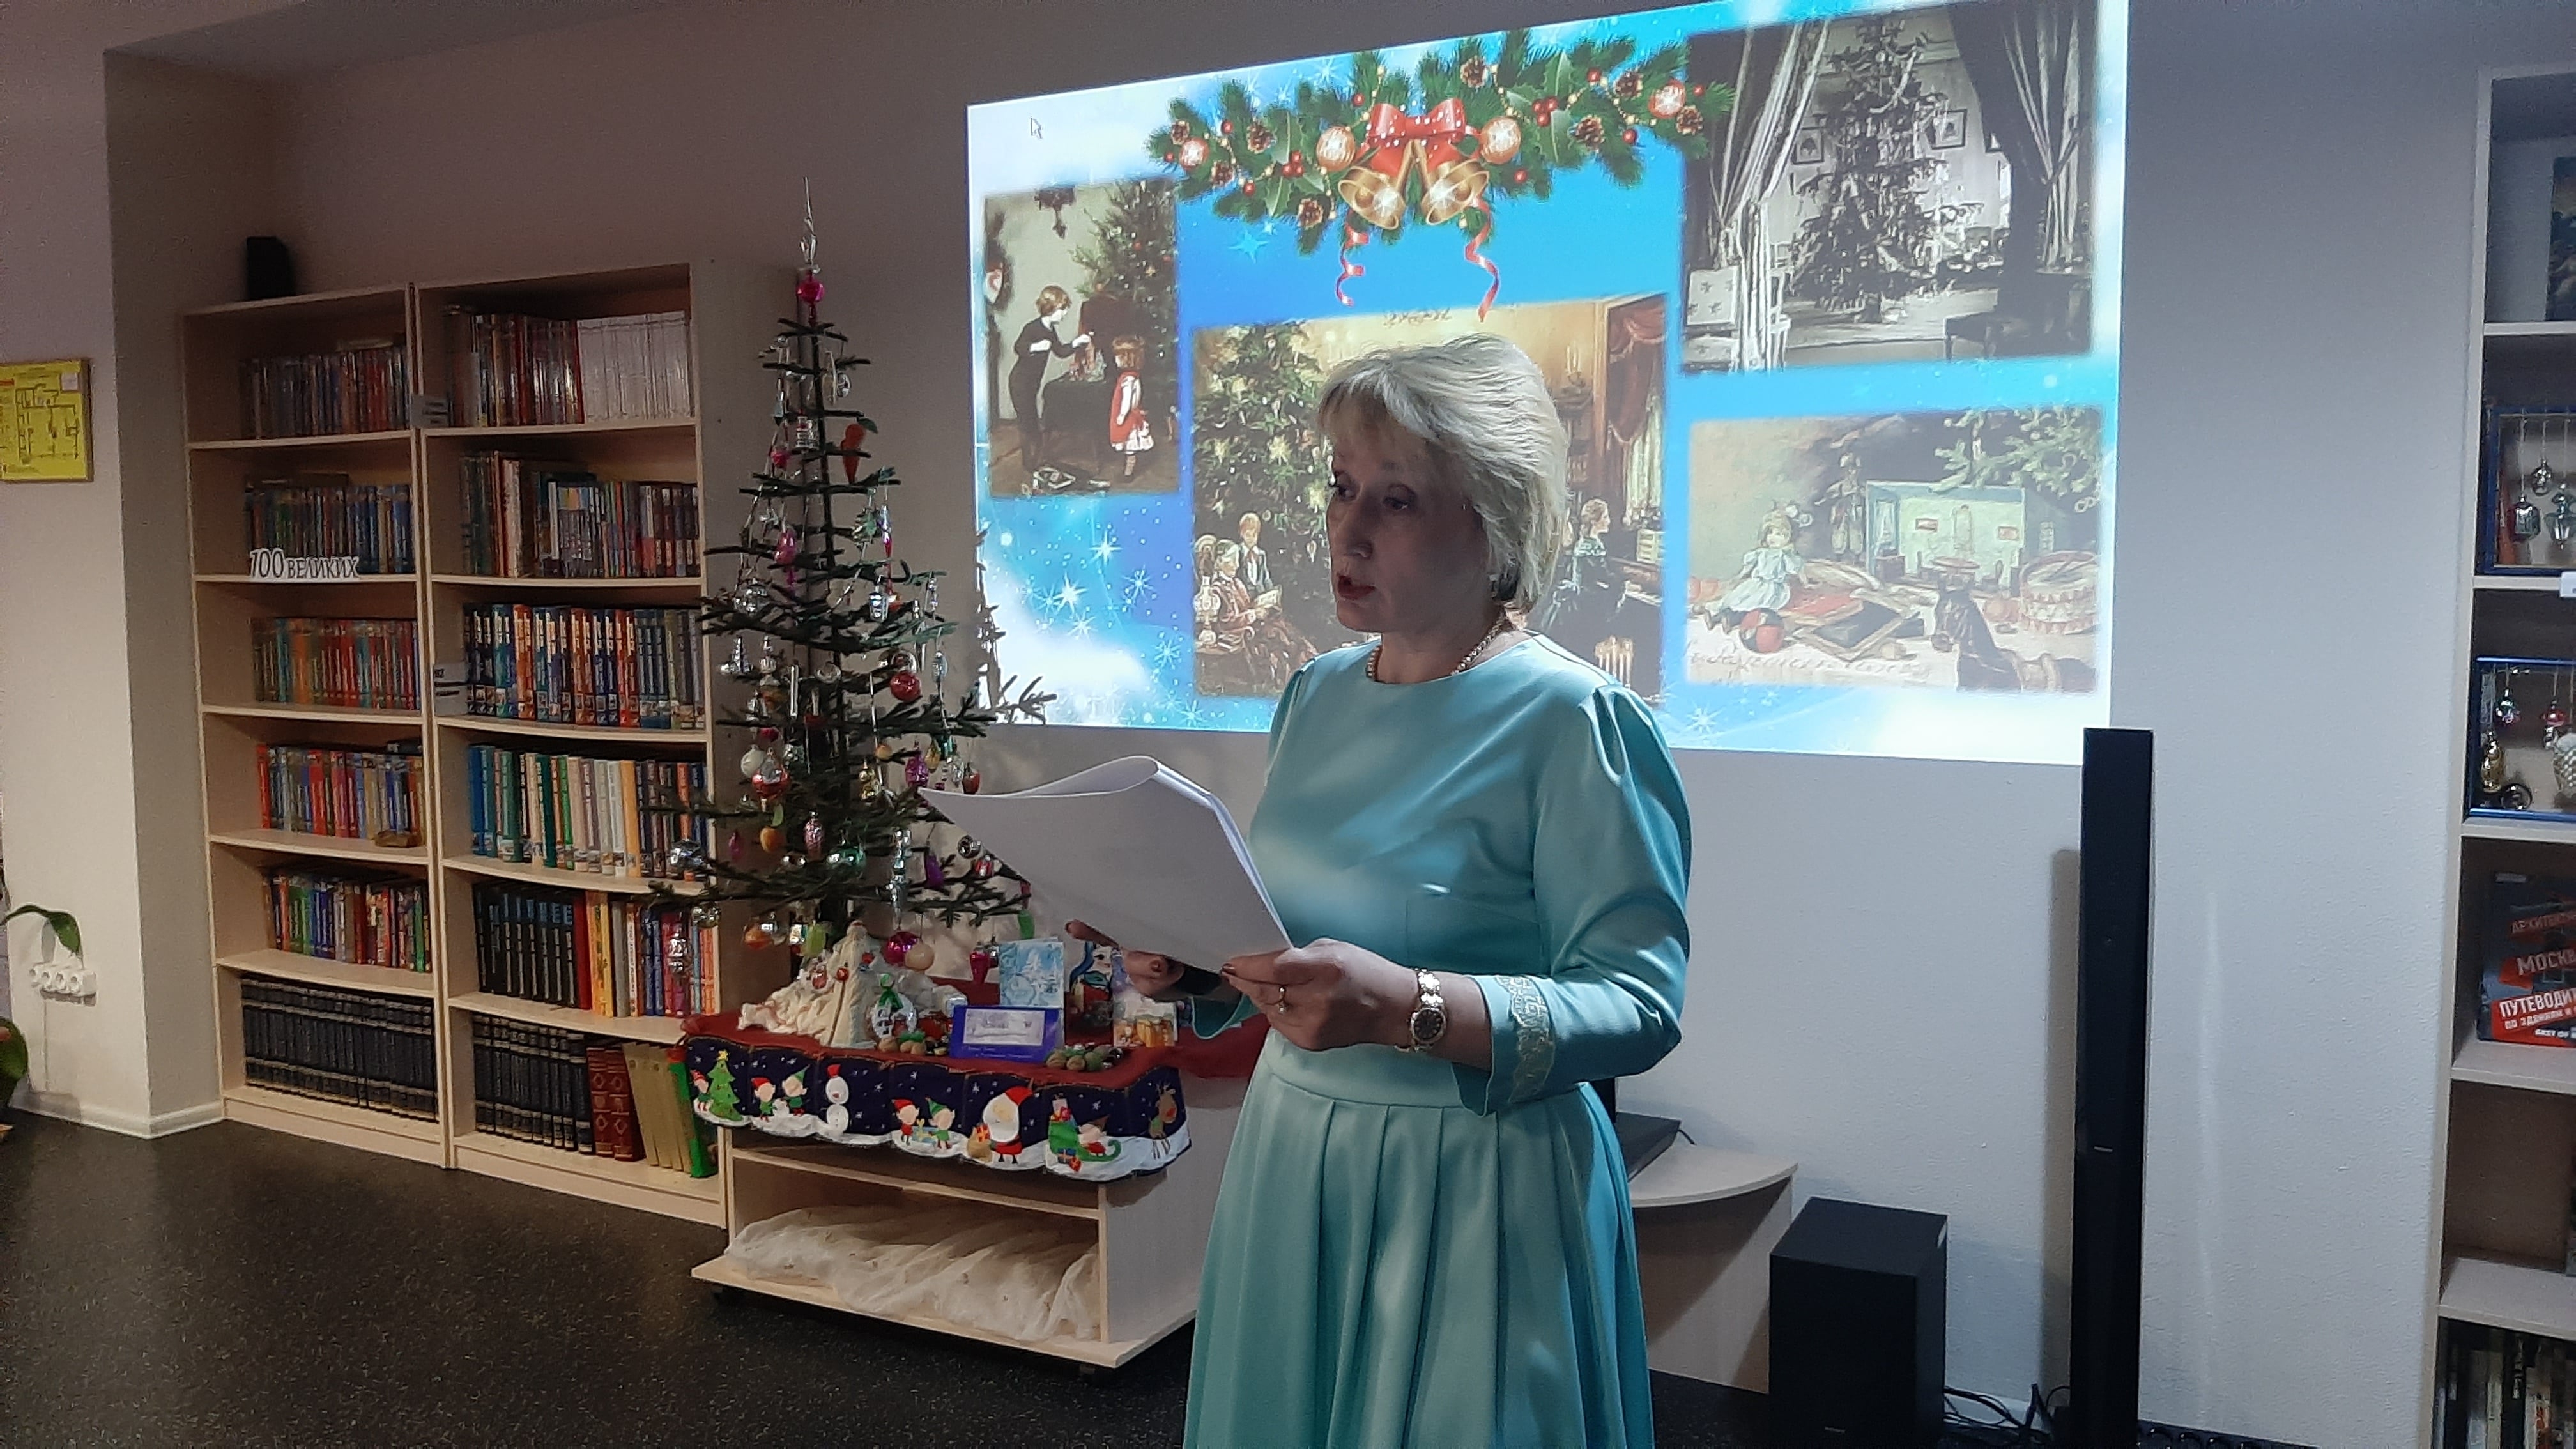 Онлайн-мероприятие провели в Центральной библиотеке Щербинки. Фото с официального сайта библиотеки.